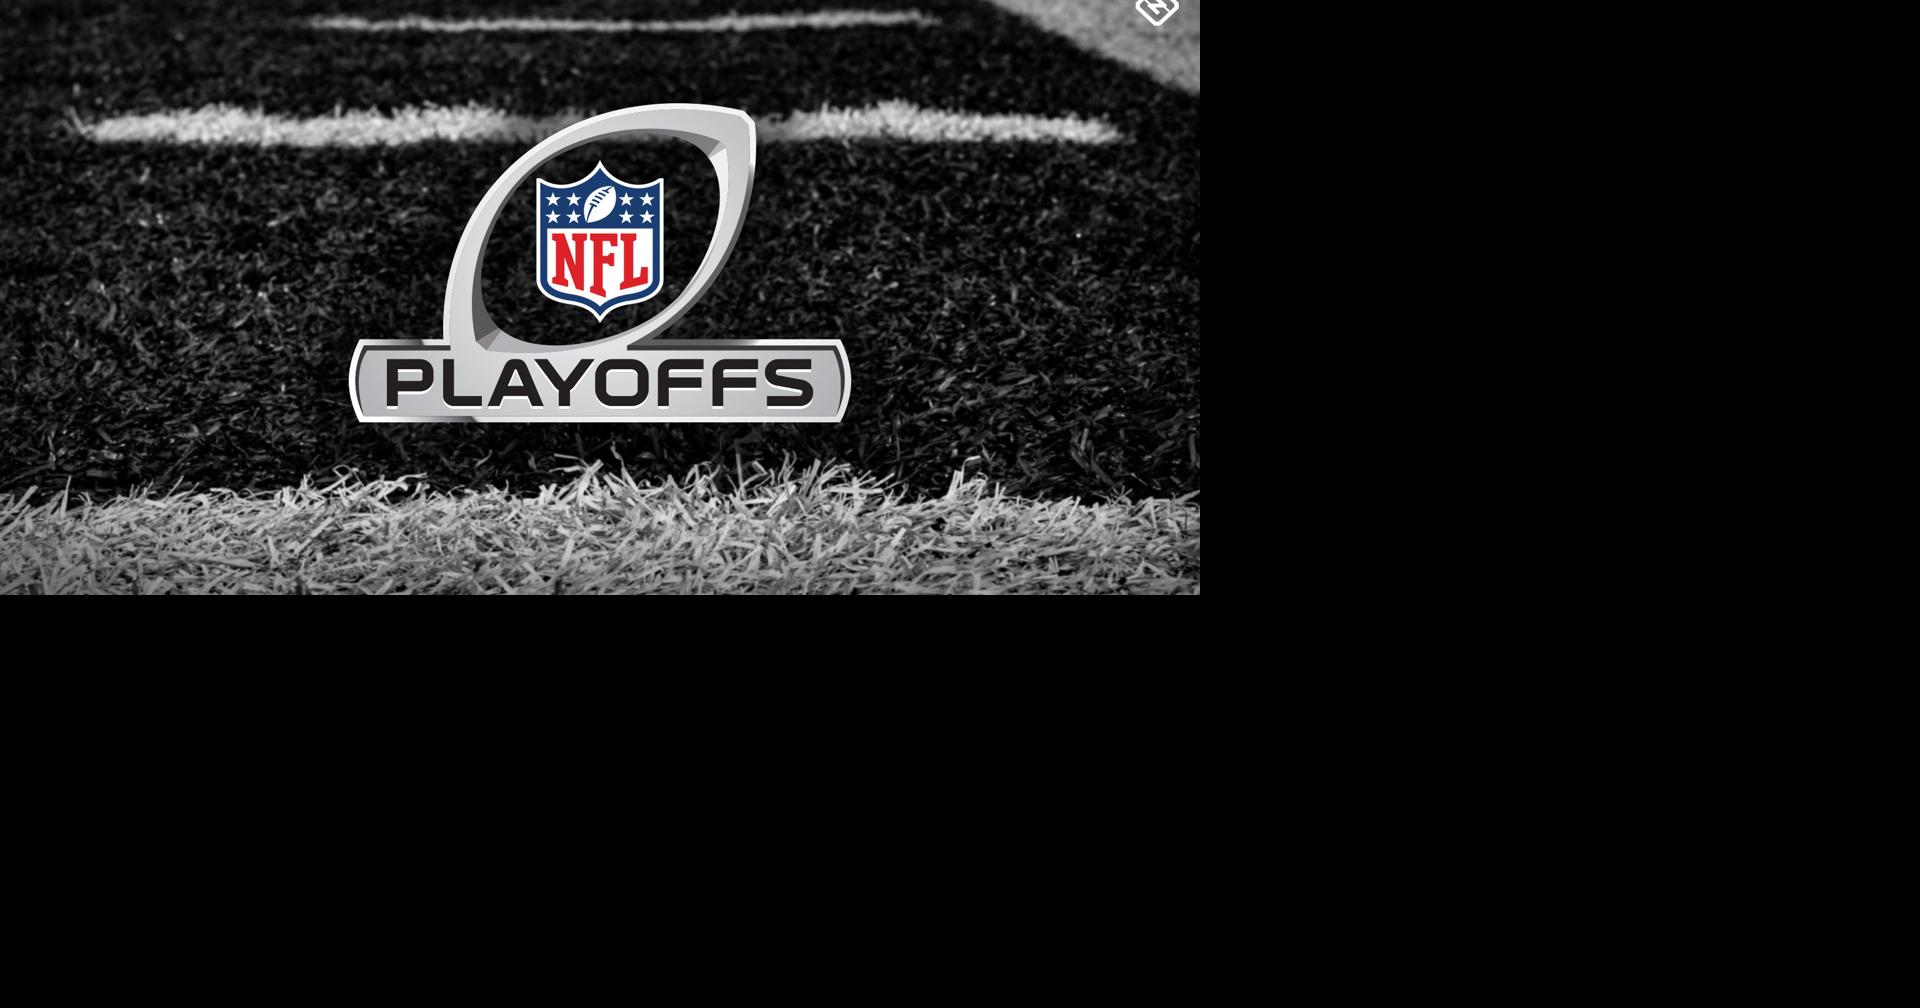 NFL Playoff Schedule 2019-2020, Sports